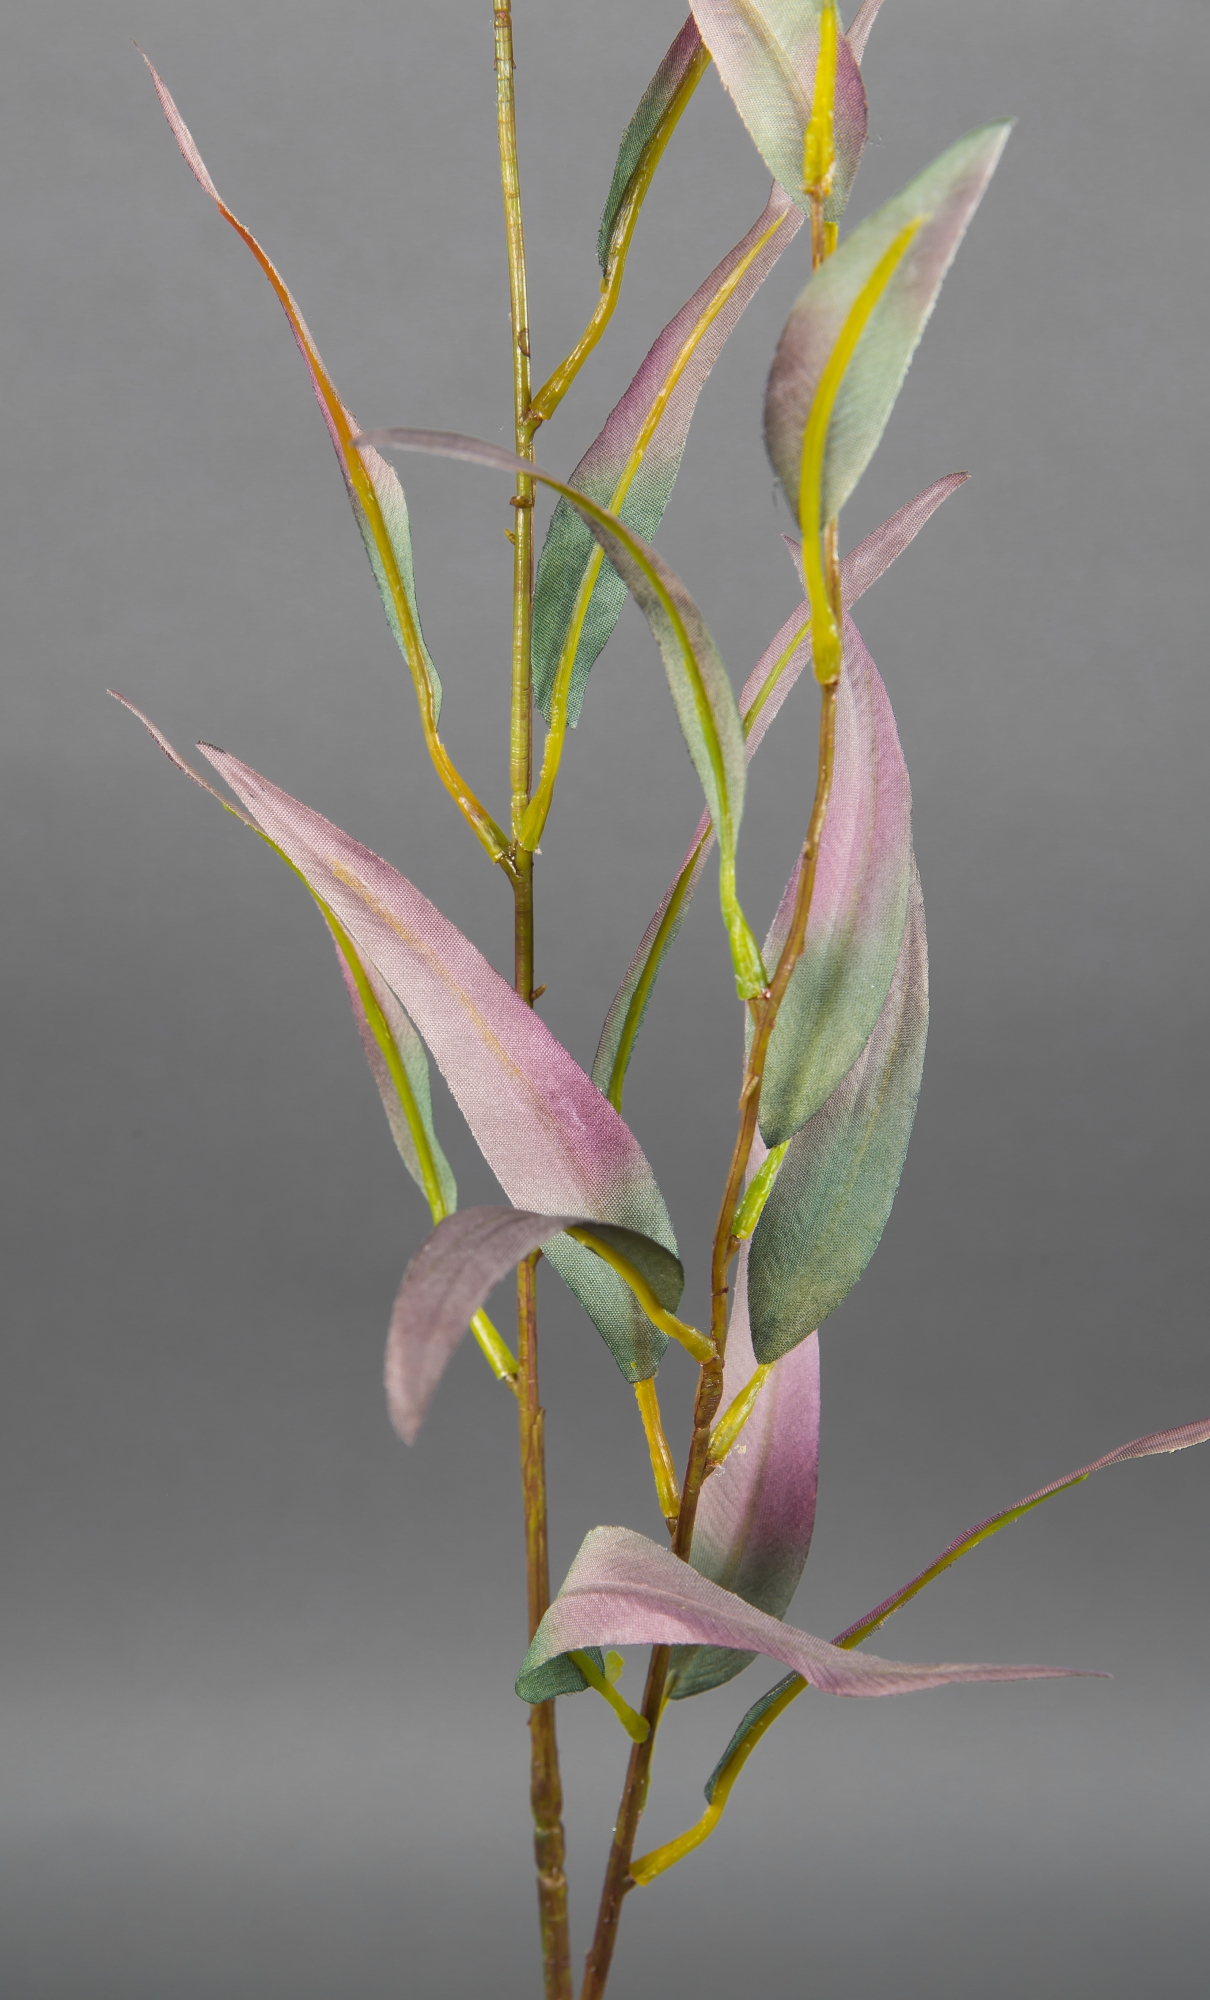 Eukalyptuszweig 90cm grün-rosa DP Kunstzweig künstliche Kunstpflanzen künstlicher Zweige Eukalyptus